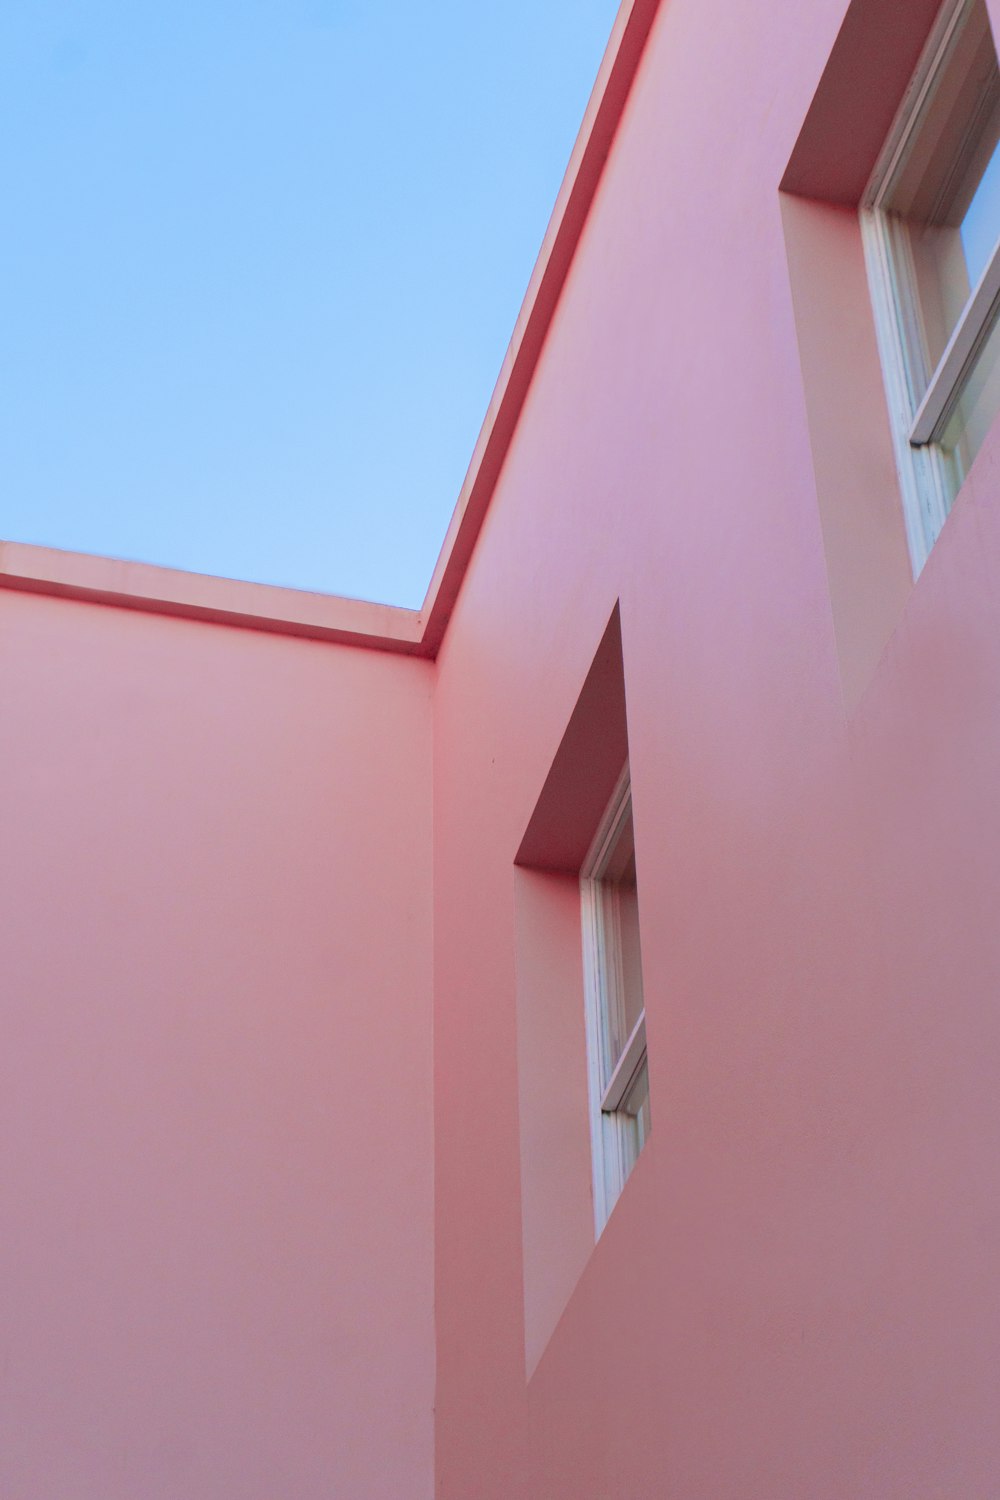 Edificio de hormigón rosa bajo el cielo azul durante el día